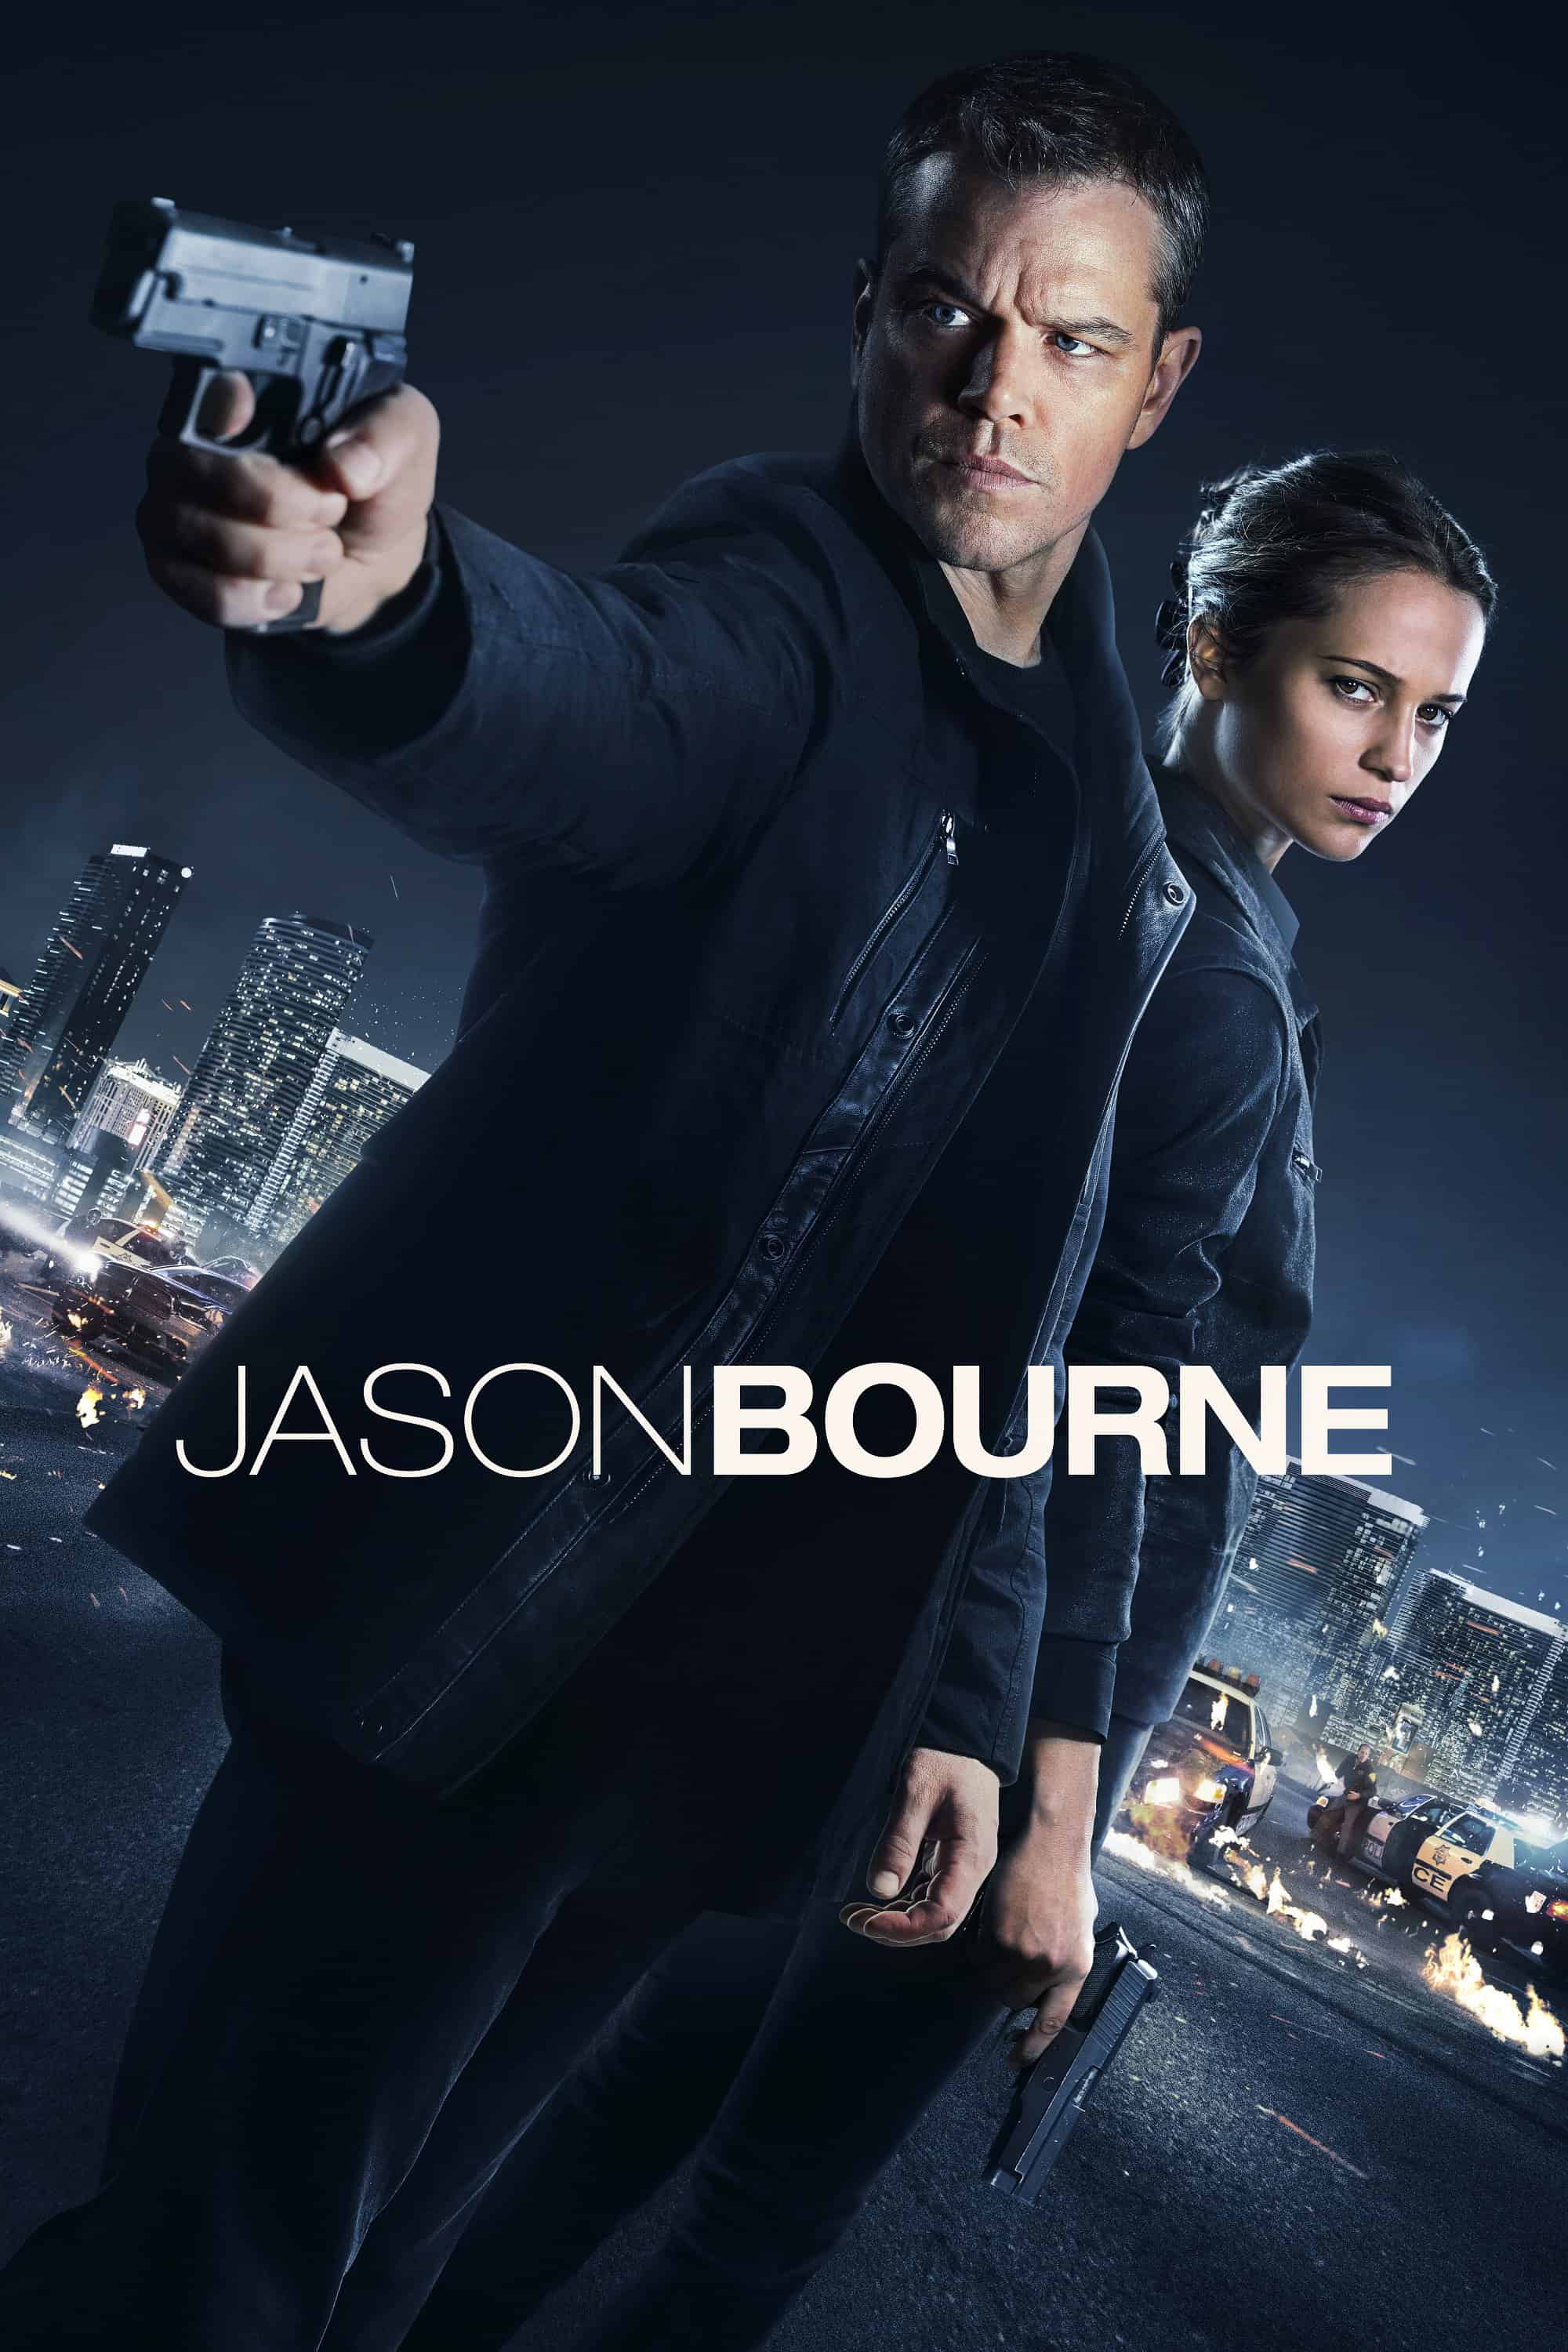 Jason Bourne, 2016 